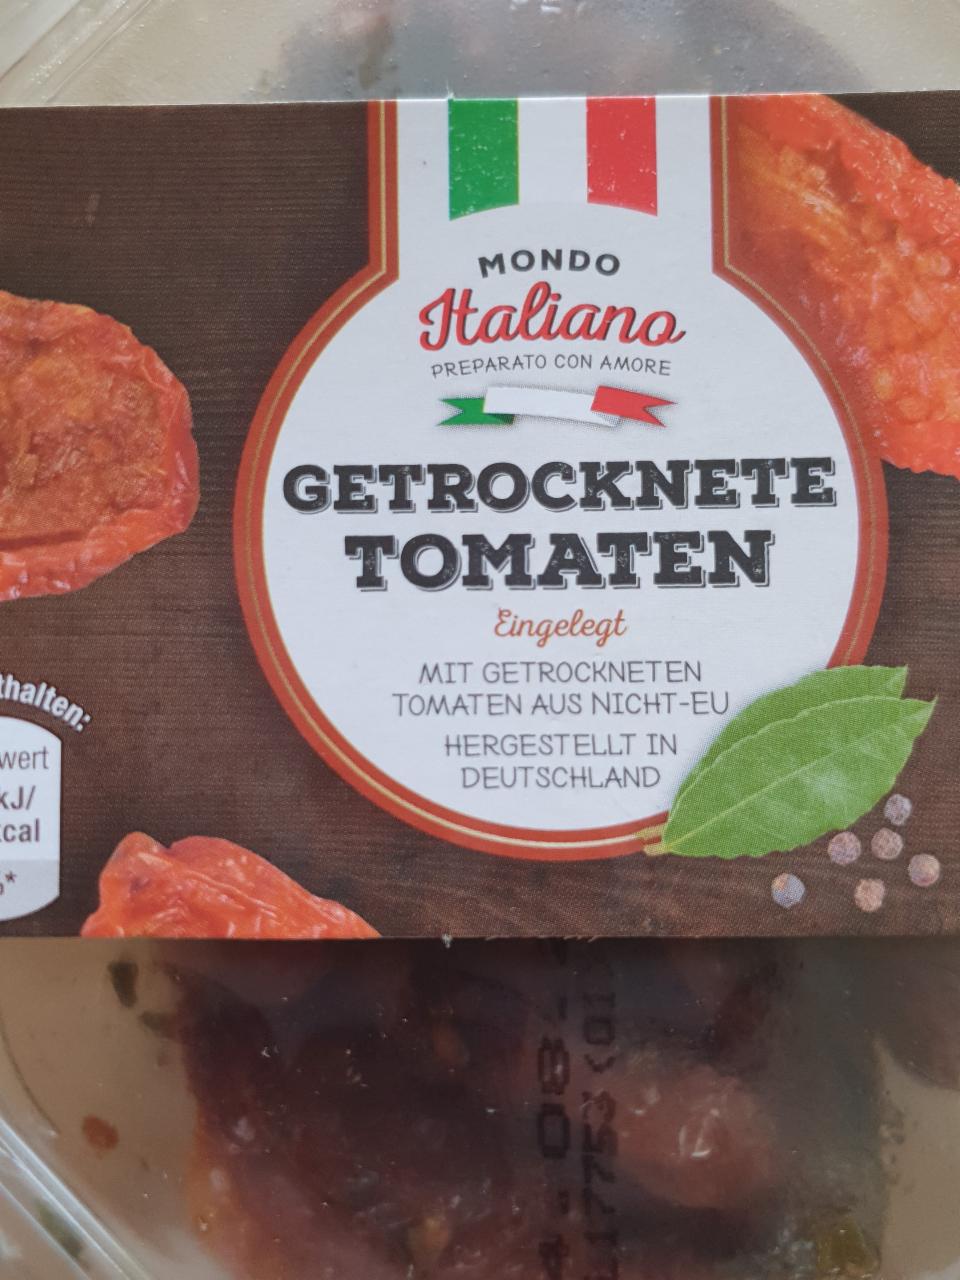 Getrocknete Tomaten Mondo Italiano nutriční a kJ kalorie, hodnoty 